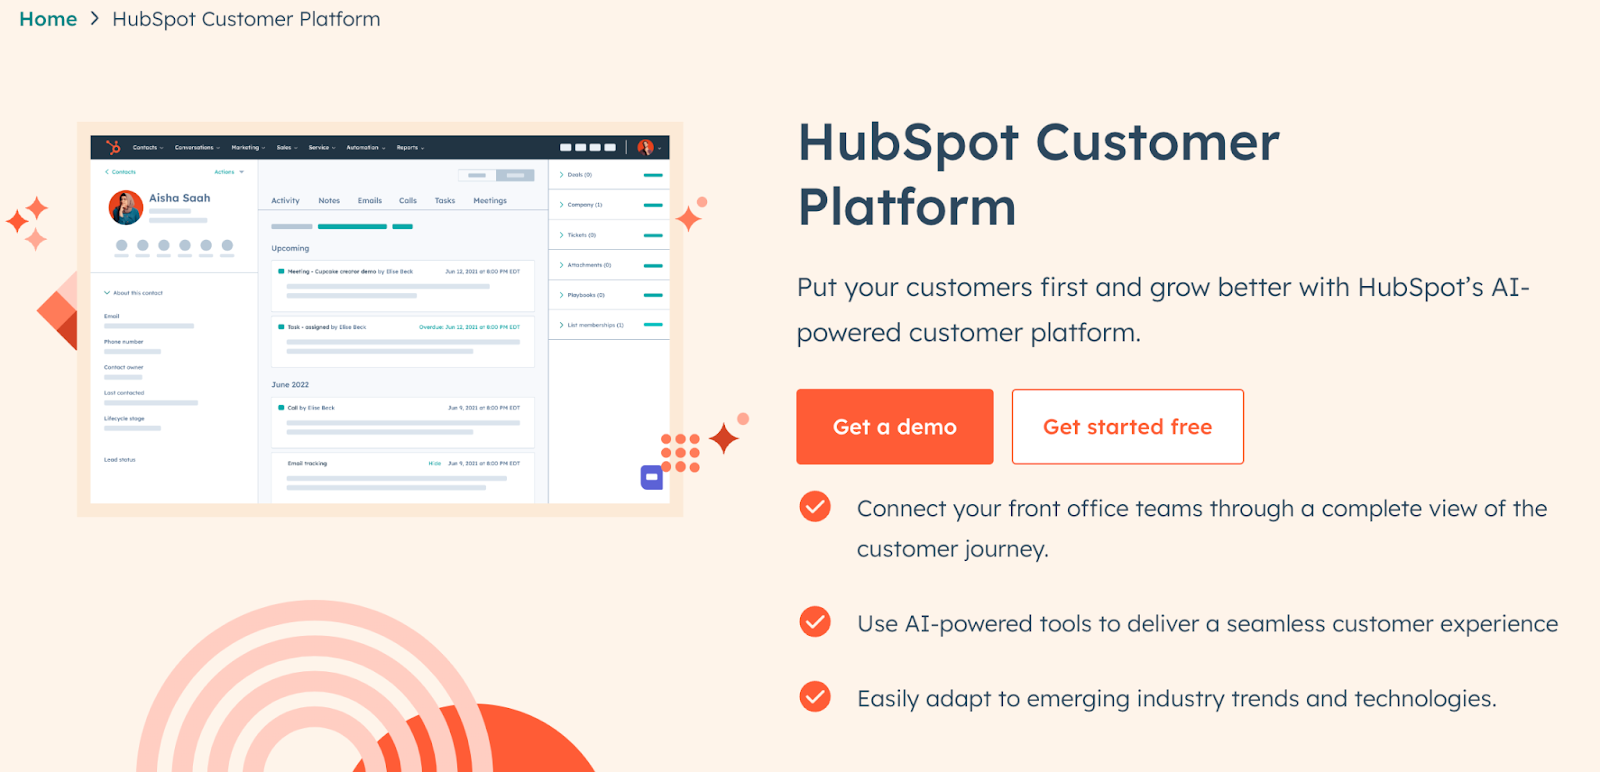 HubSpot Customer Platform